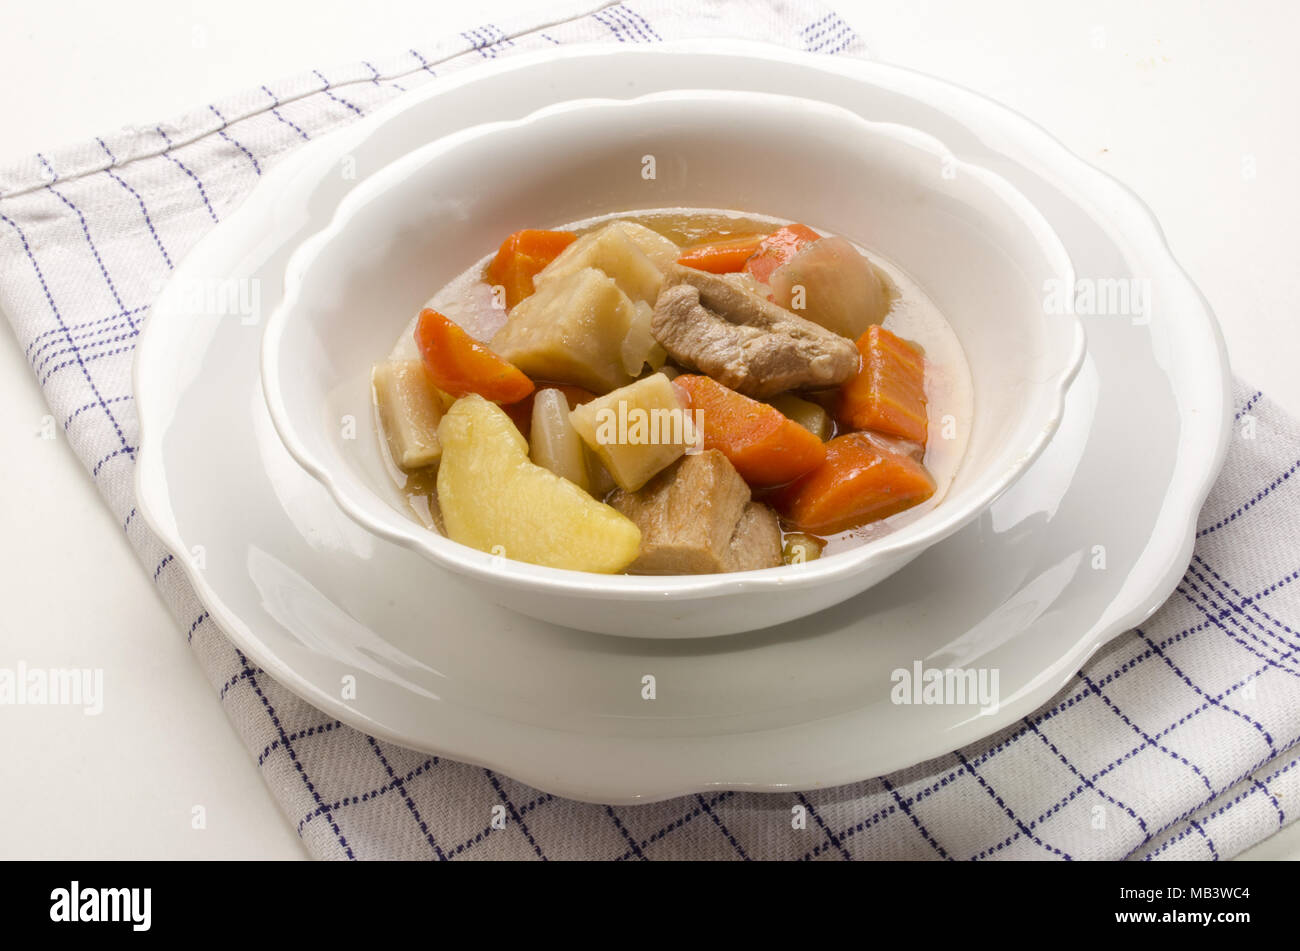 Hecho en casa clásico estofado irlandés en un recipiente blanco con vegetales growen inicio Foto de stock